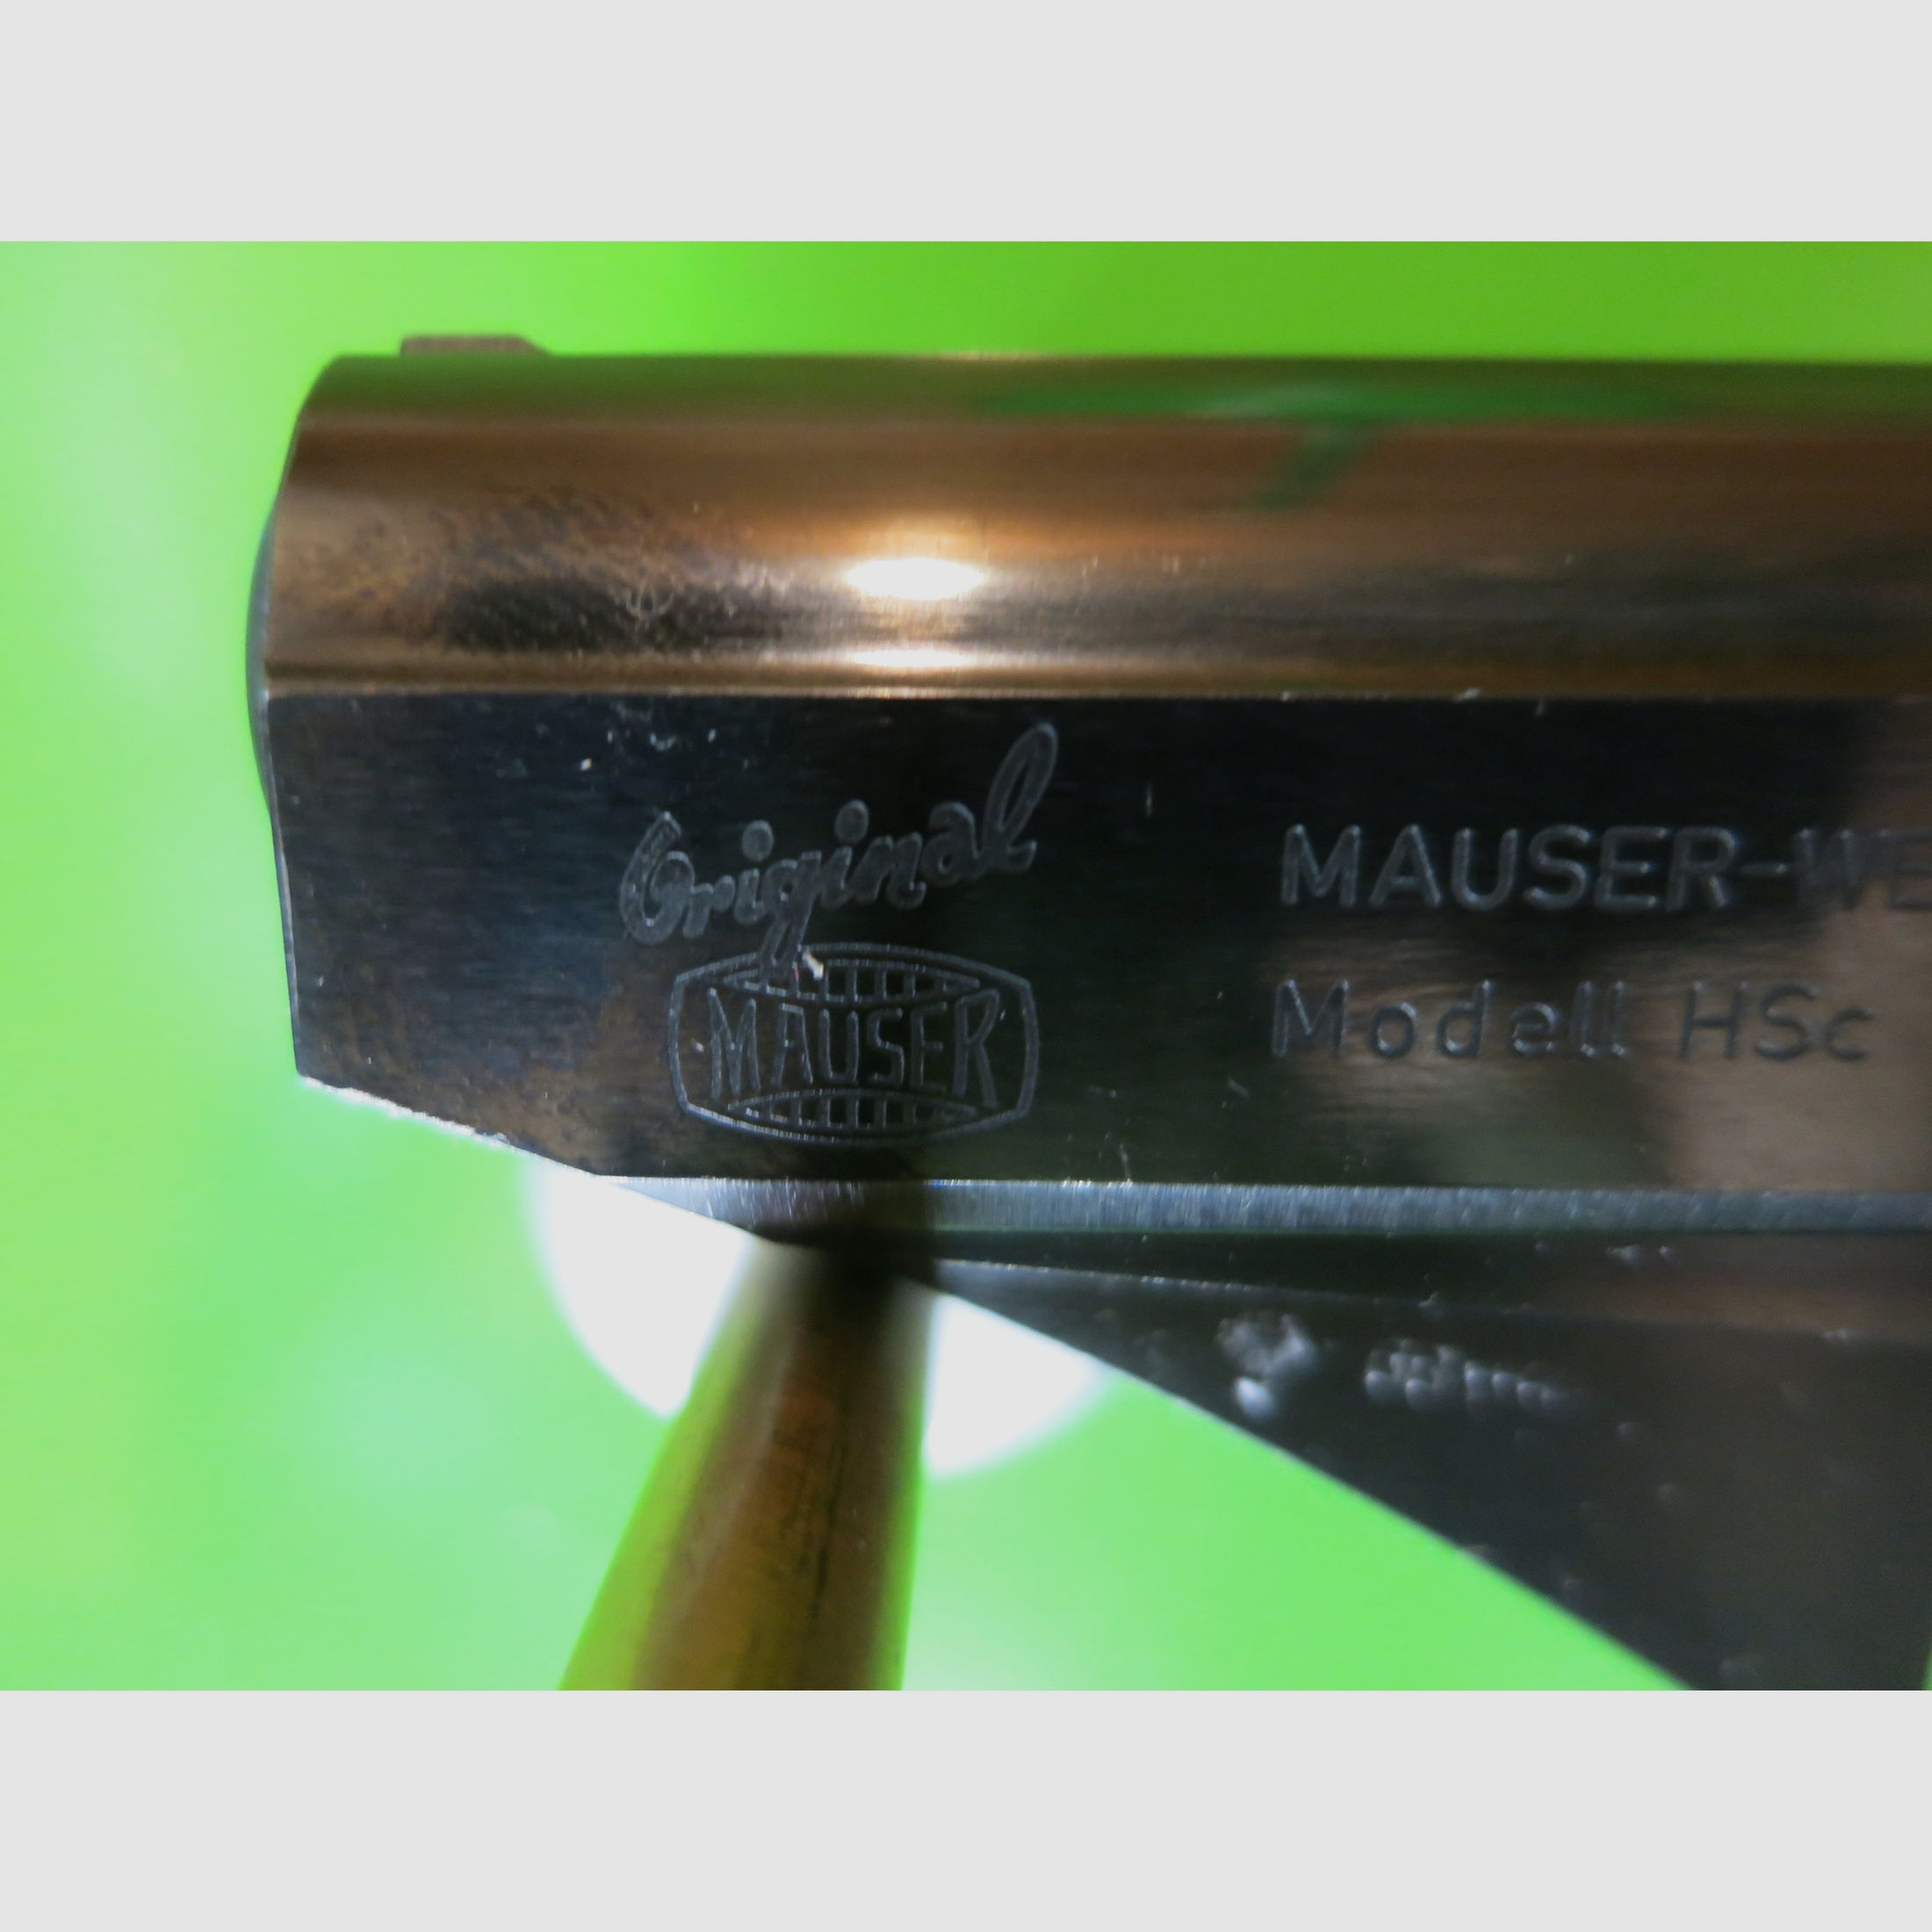 Mauser HSc Sport- Trainingspistole 4mmM20 -Sammlerwaffe-     #40